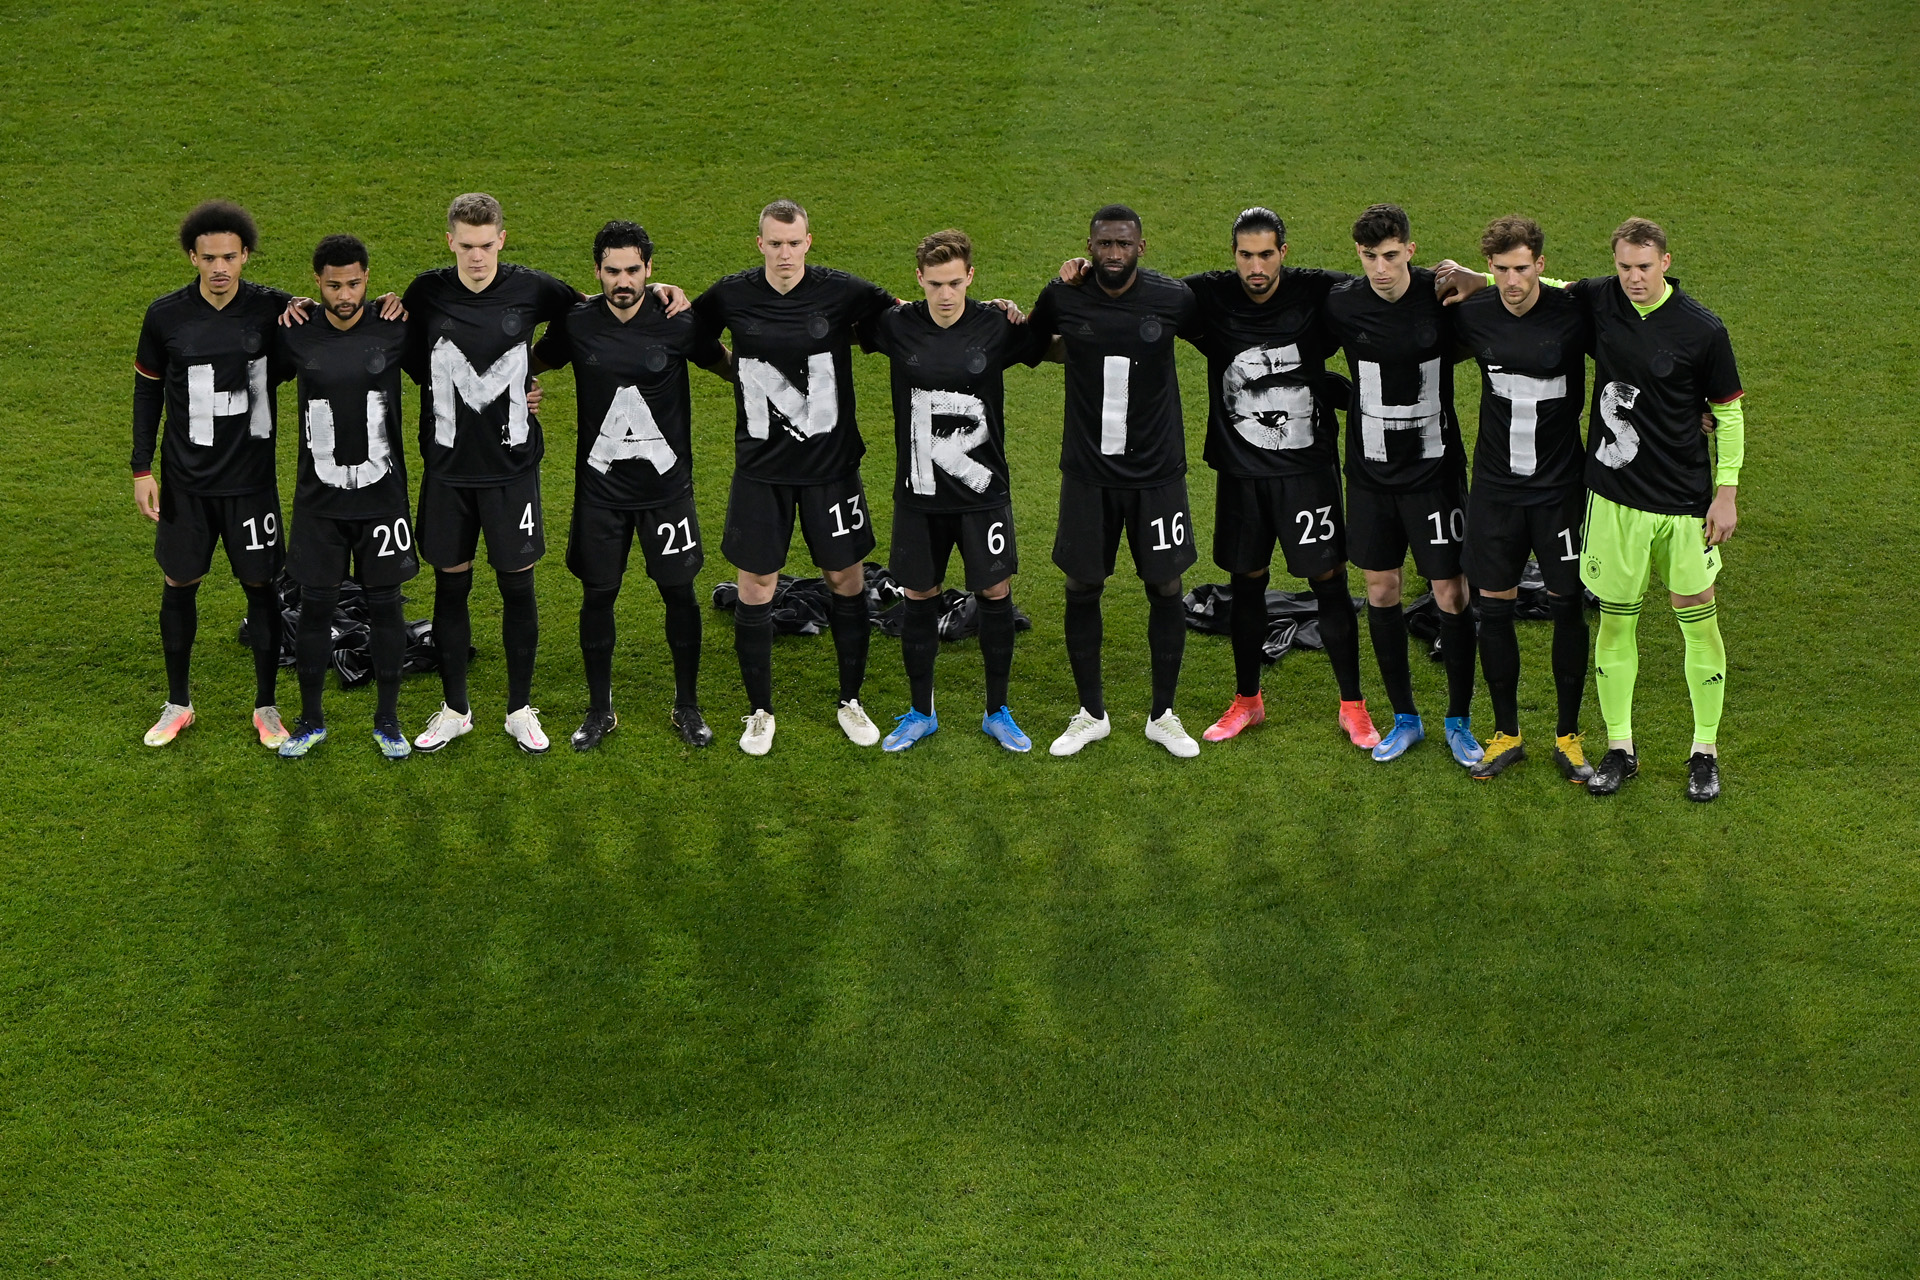 A német válogatott játékosai tiltakoznak az emberi jogok megsértése ellen, a katari vb selejtezőn 2021 március 25-én, a Németország-Izland mérkőzésen (Fotó: Tobias Schwarz - Pool/Getty Images)